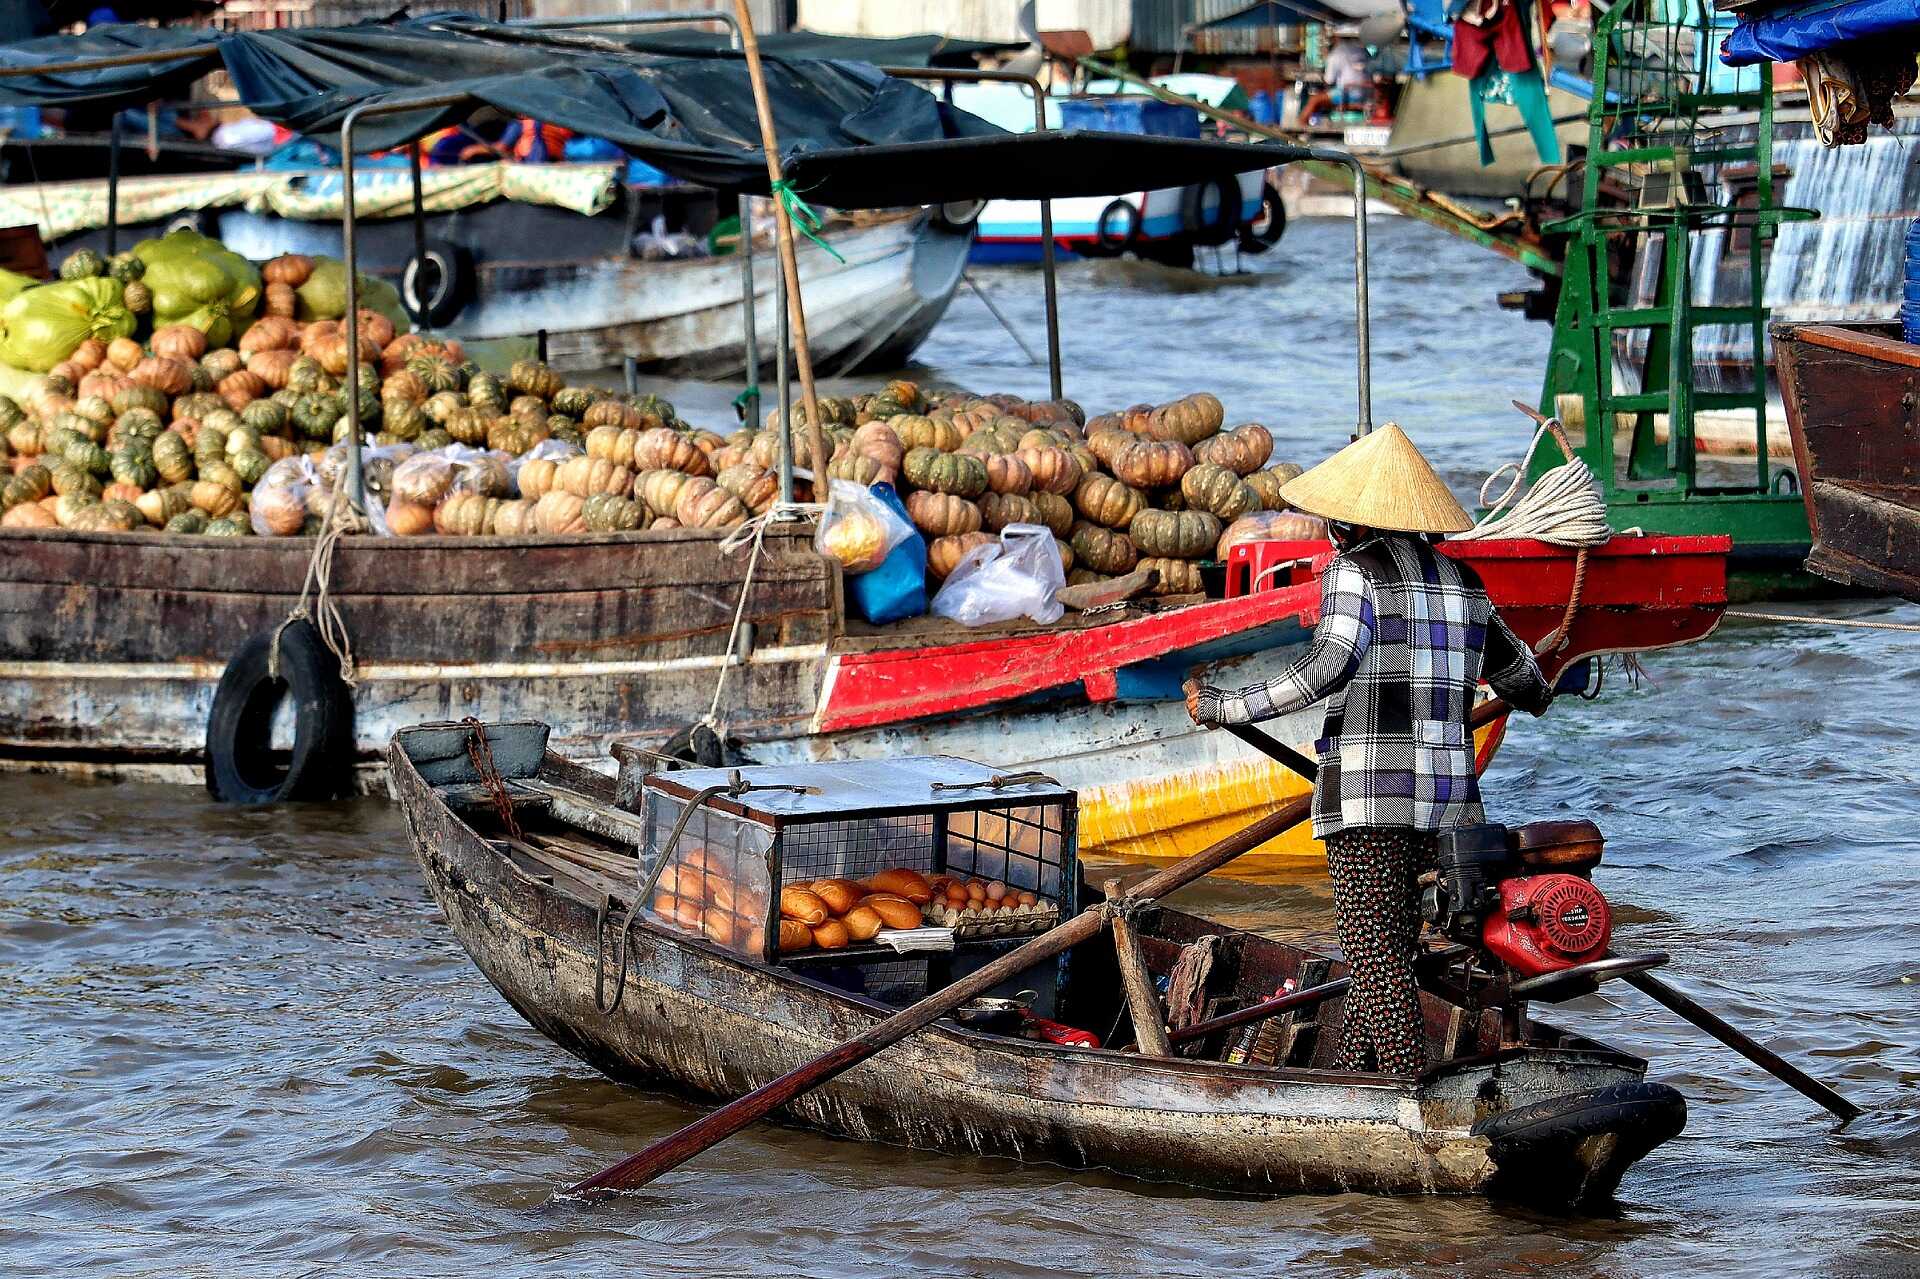 Du lịch Miền Tây - Du lịch Hành Hương Cần Thơ - Châu Đốc Tháng Giêng từ Sài Gòn